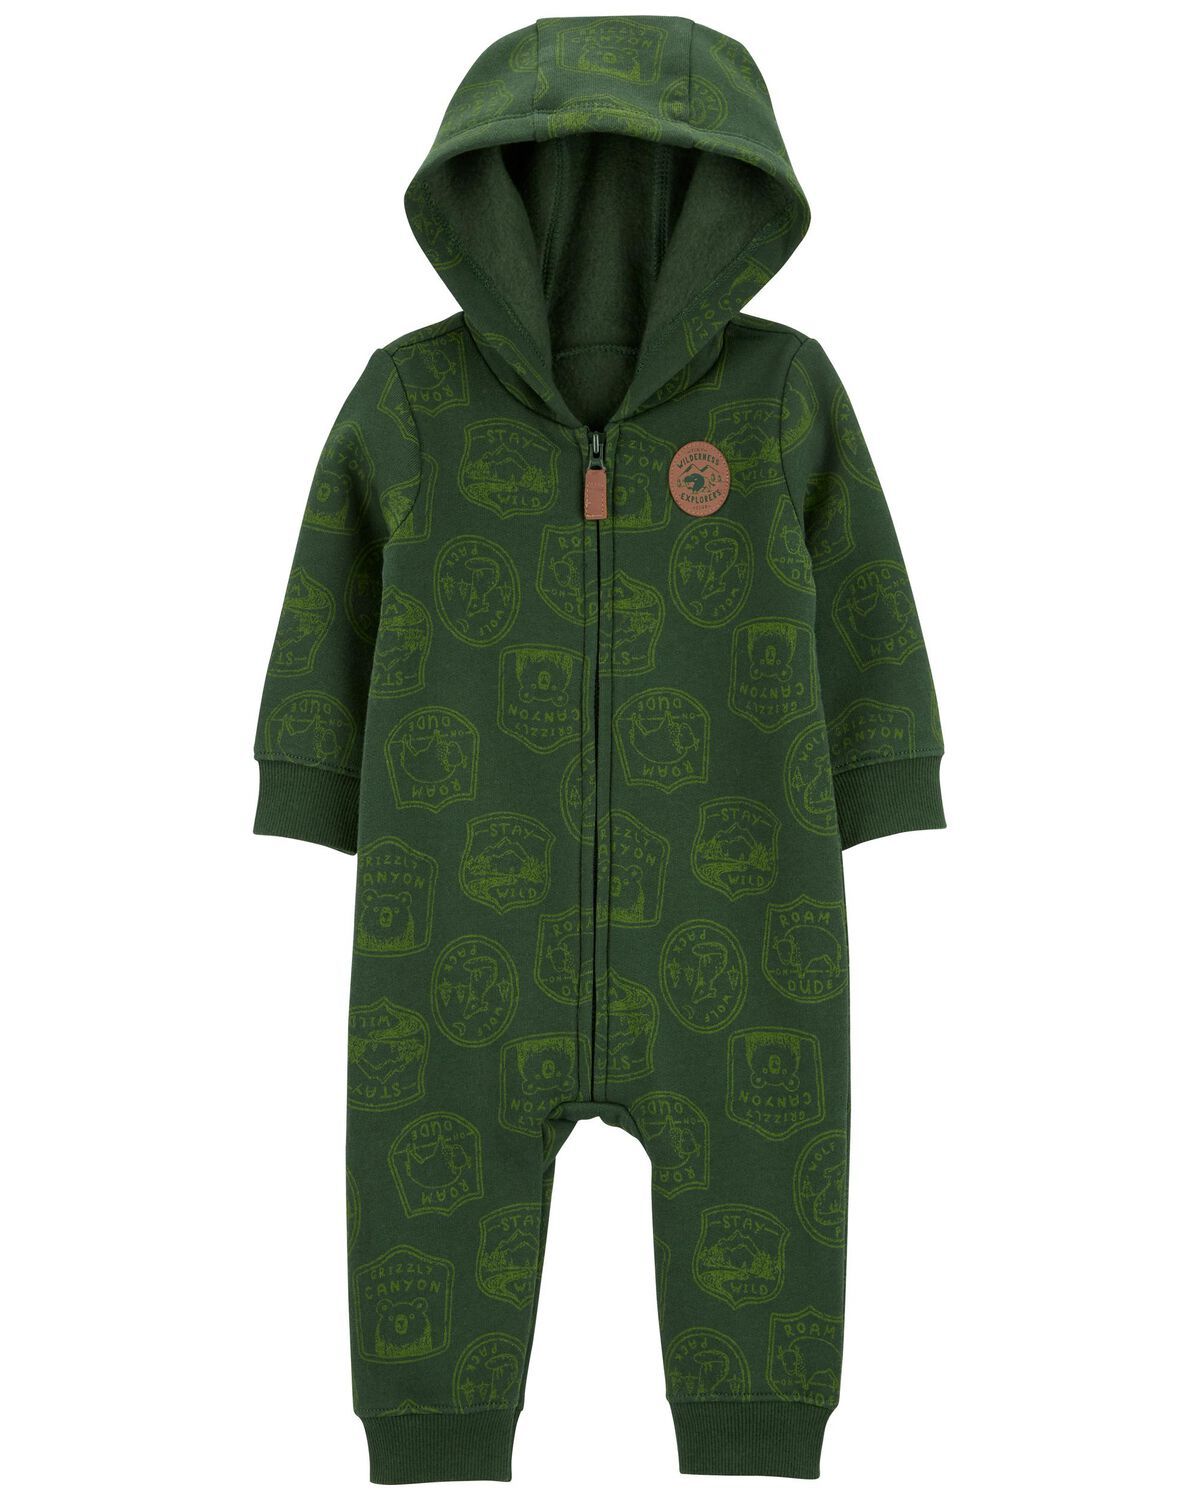 Green Baby Camping Hooded Zip-Up Fleece Jumpsuit | carters.com | Carter's